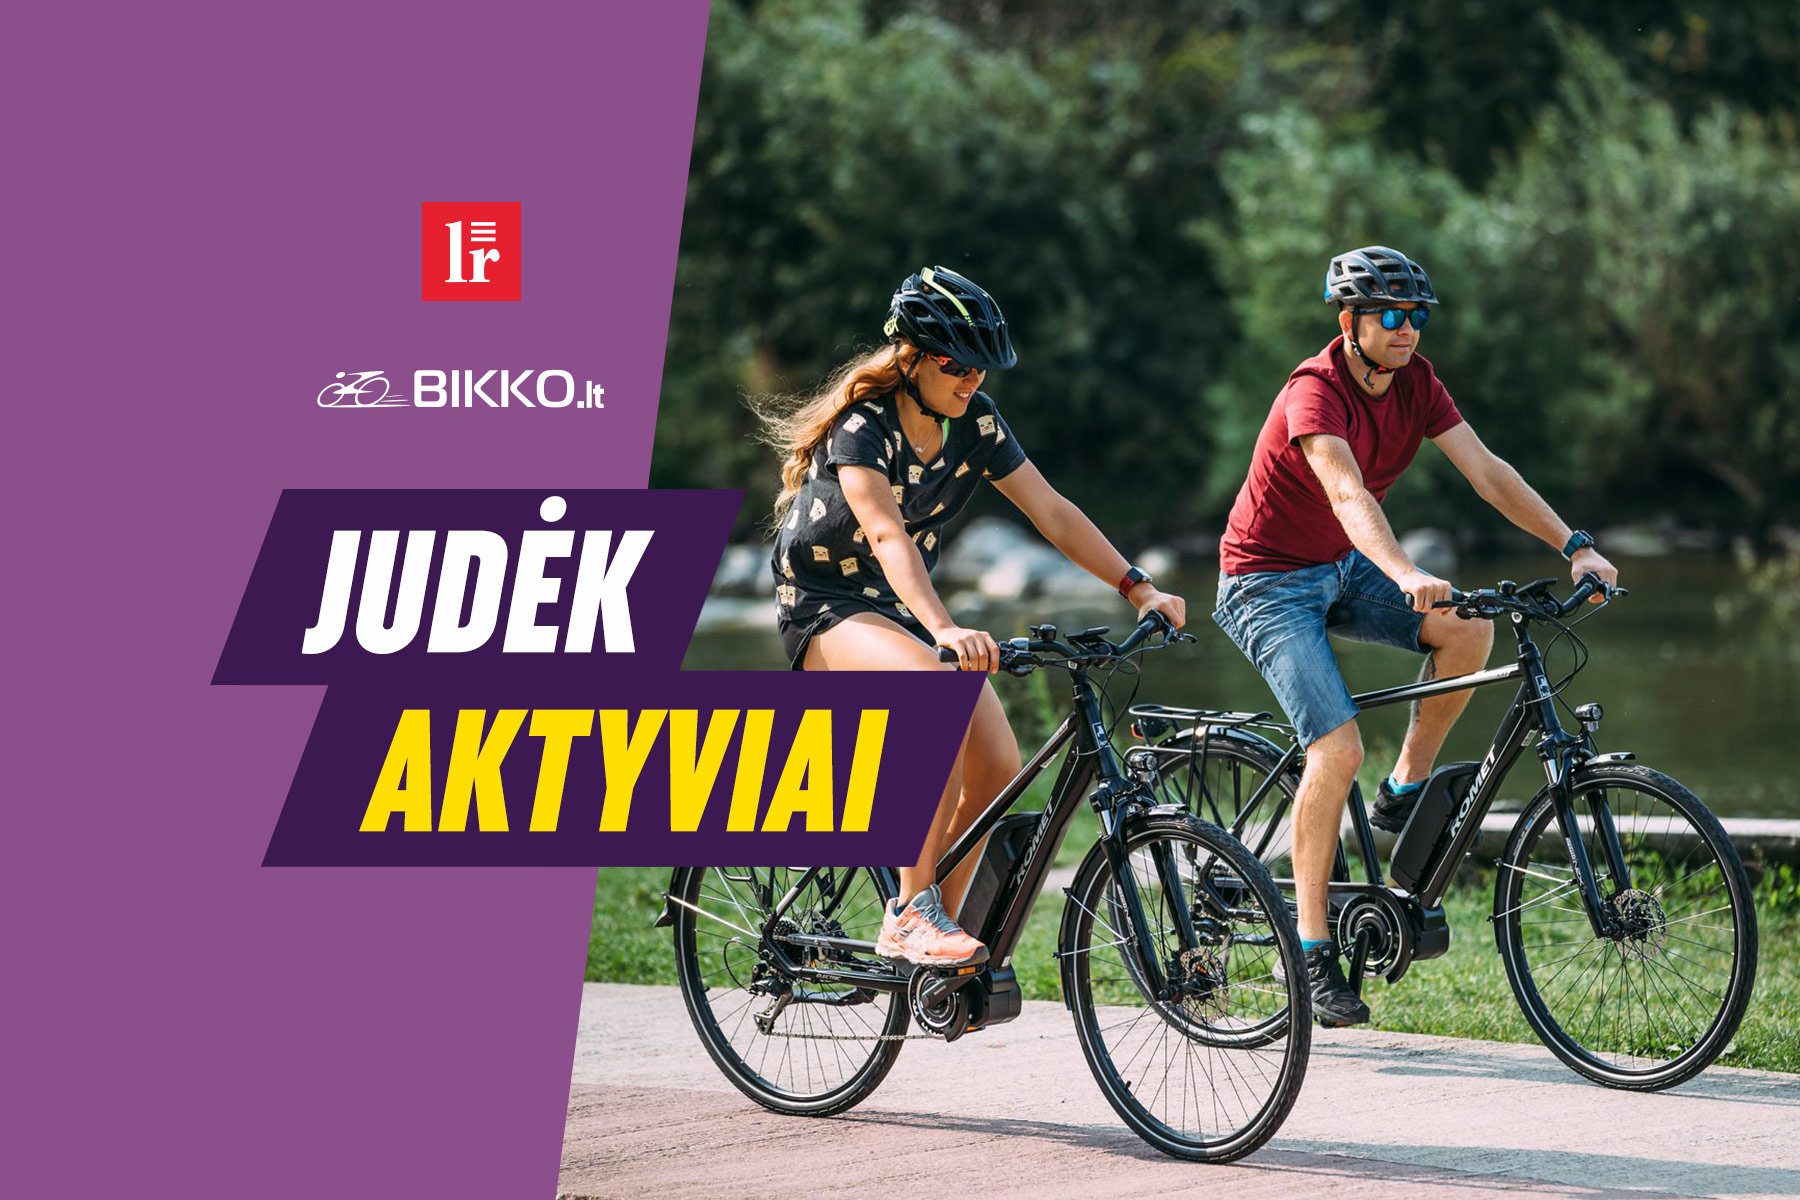 Portalas lrytas.lt ir internetinė dviračių parduotuvė BIKKO.lt pristato projektą „Judėk aktyviai su Bikko“.